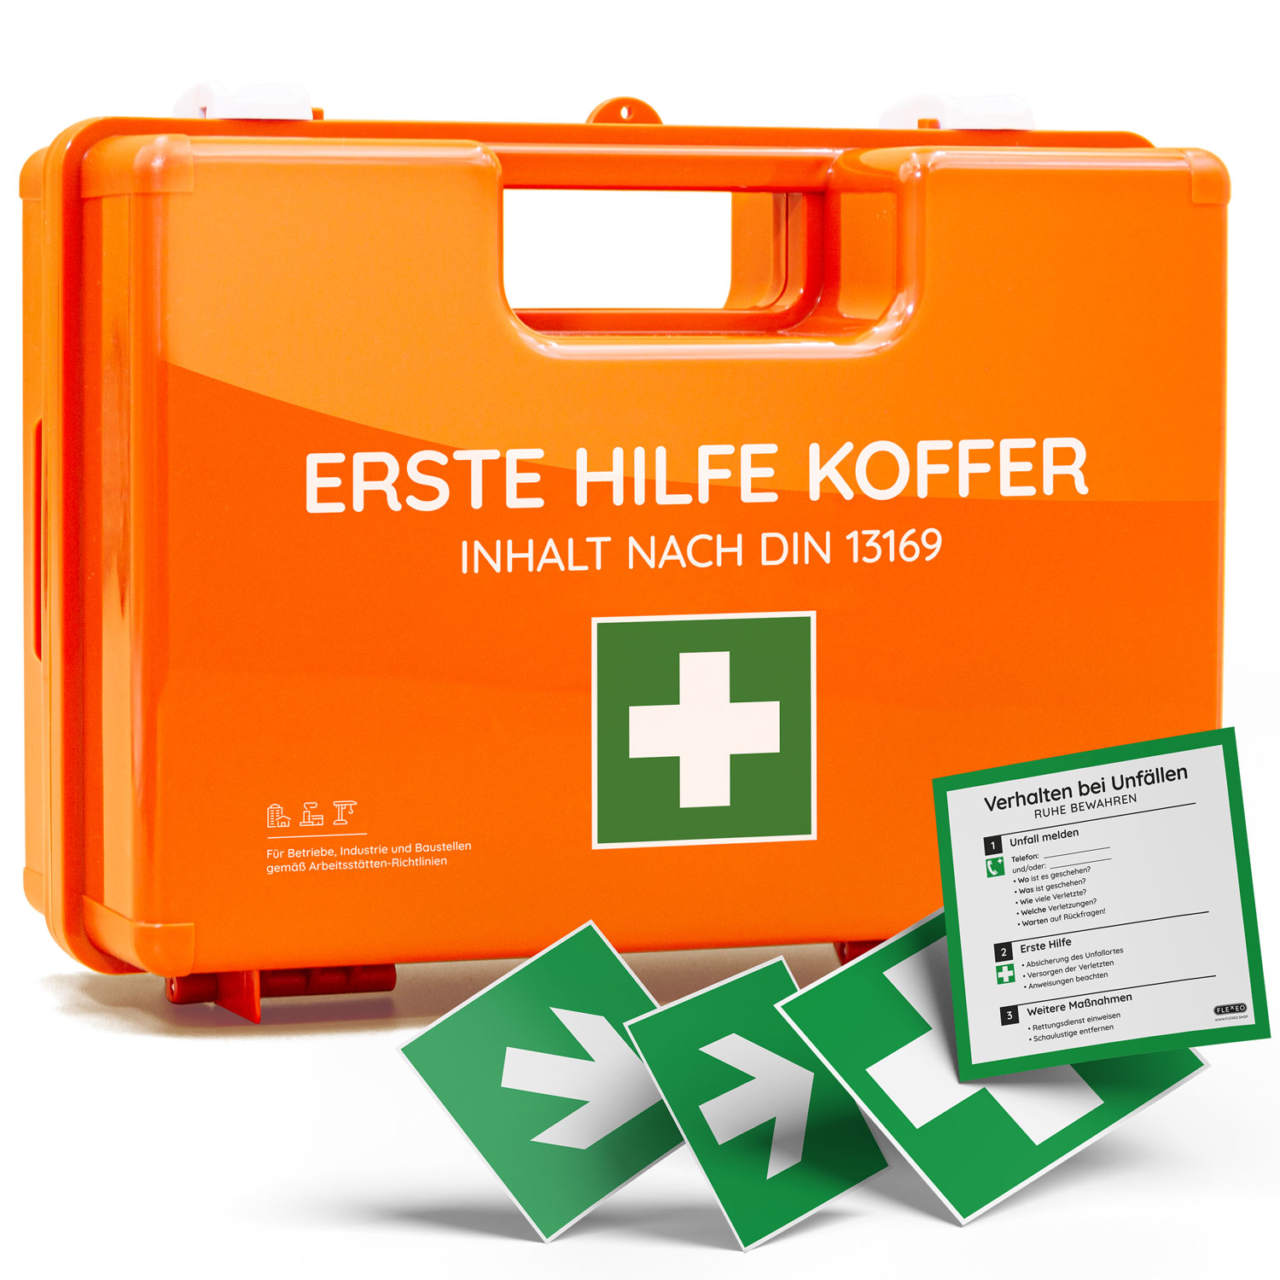 Erste Hilfe Koffer mit Wandhalterung für Büro und Betrieb - Team Impuls -  Schulungen & Ausstattungen für den Notfall